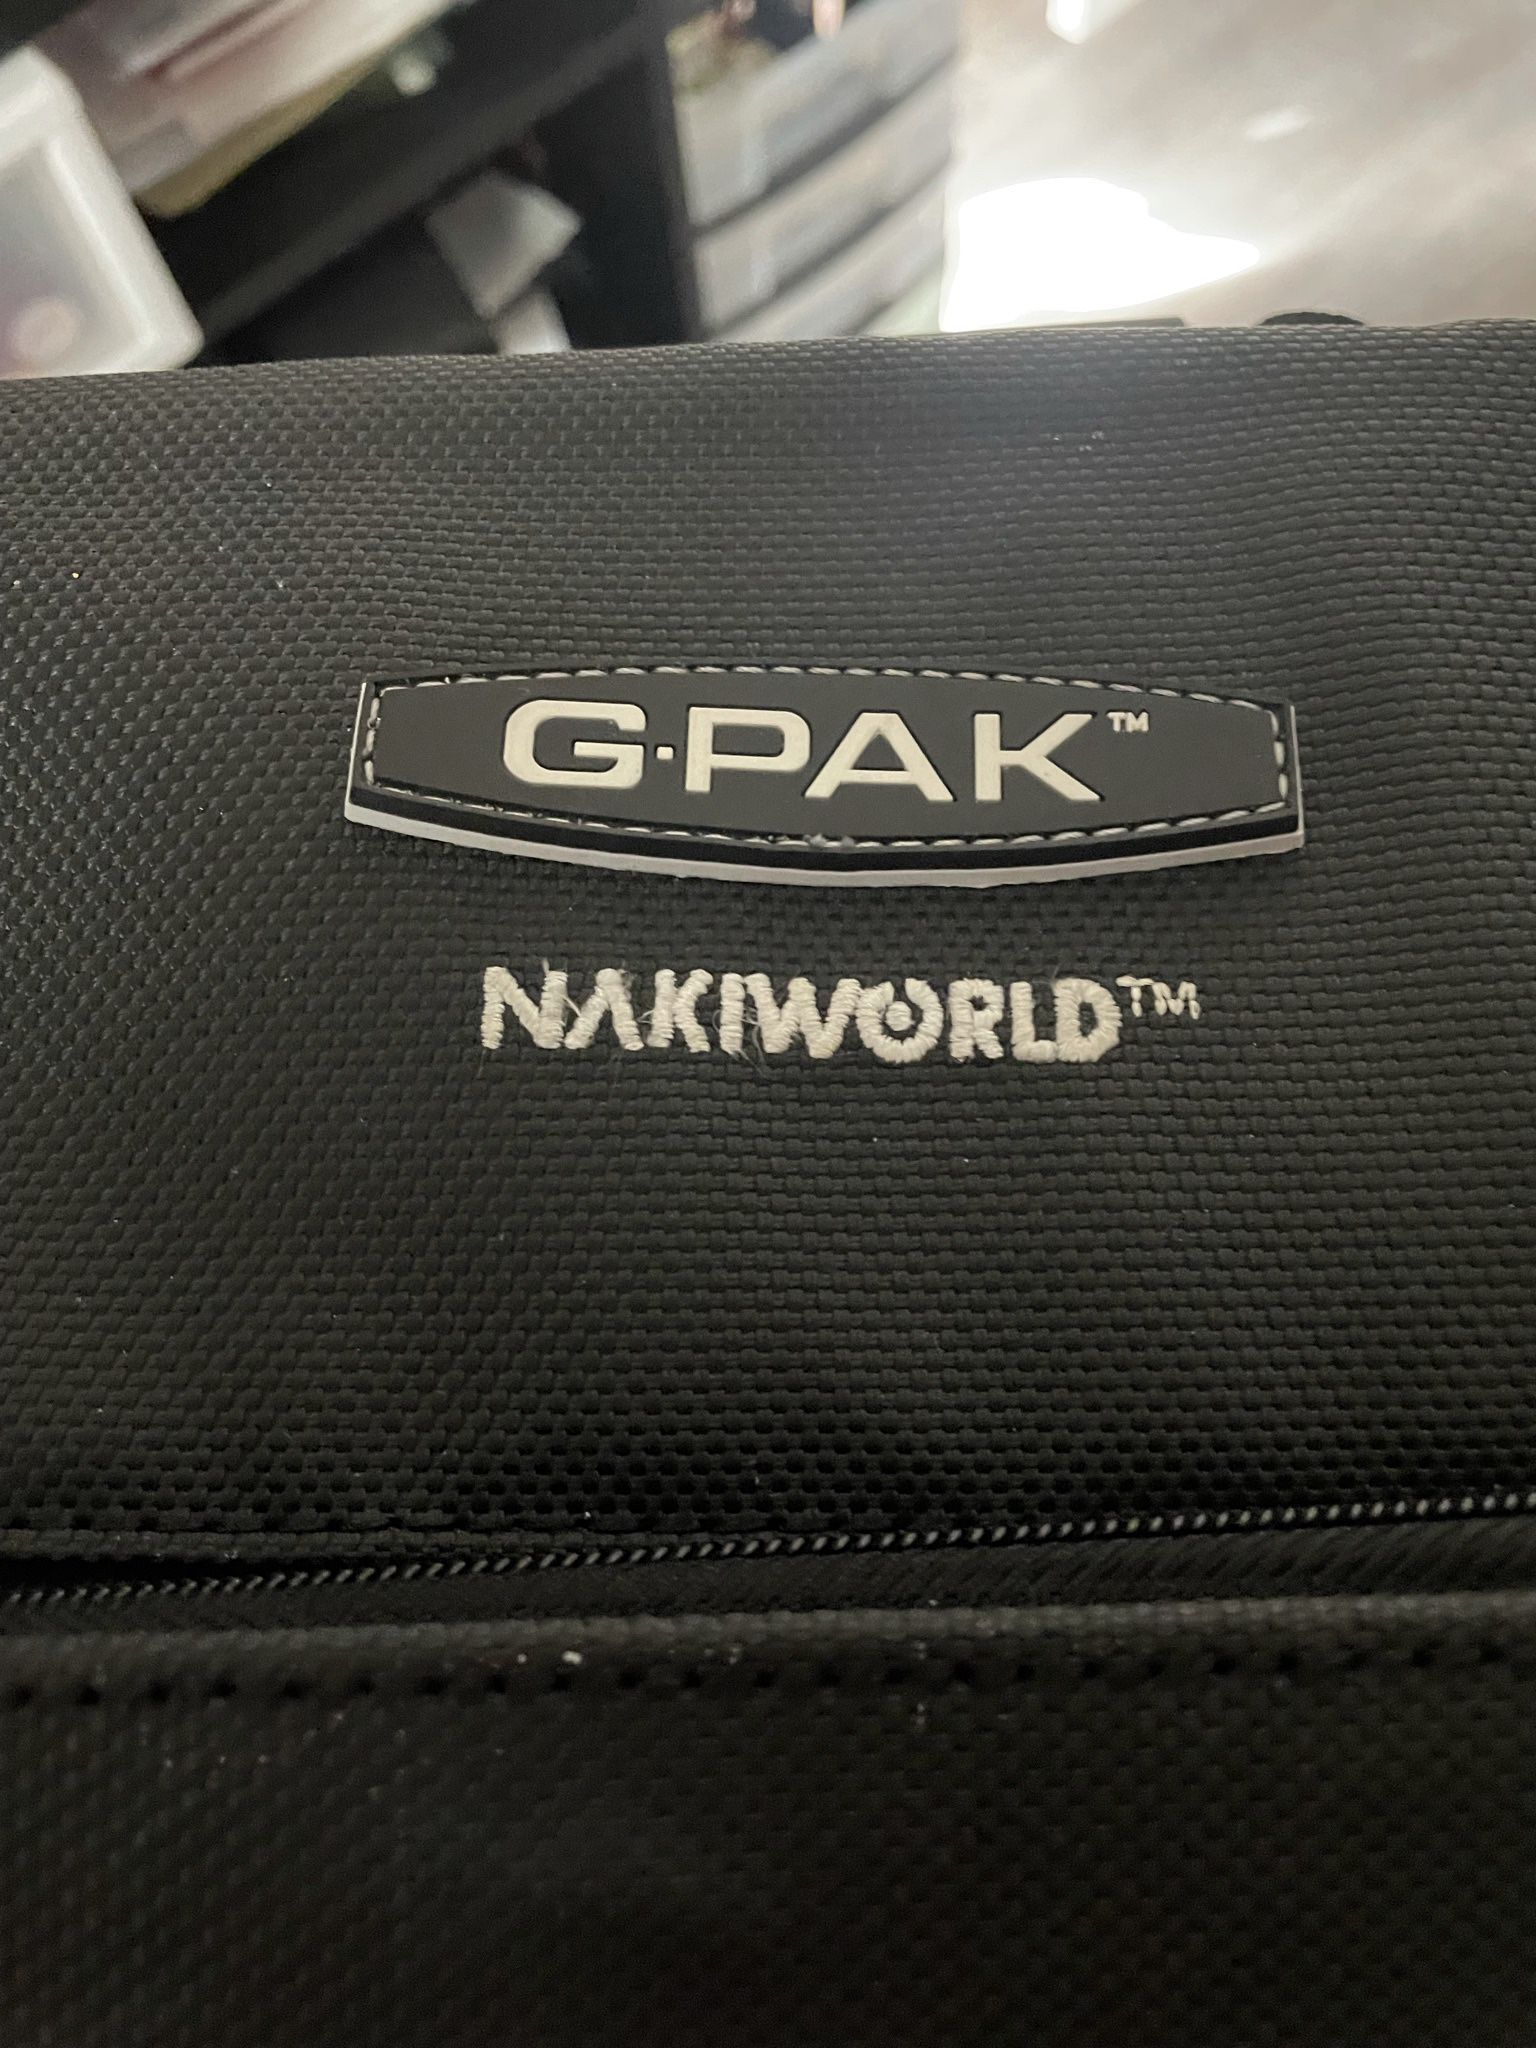 G-PAK Nakiworld Nintendo Console Travel Carrying Case Storage Bag